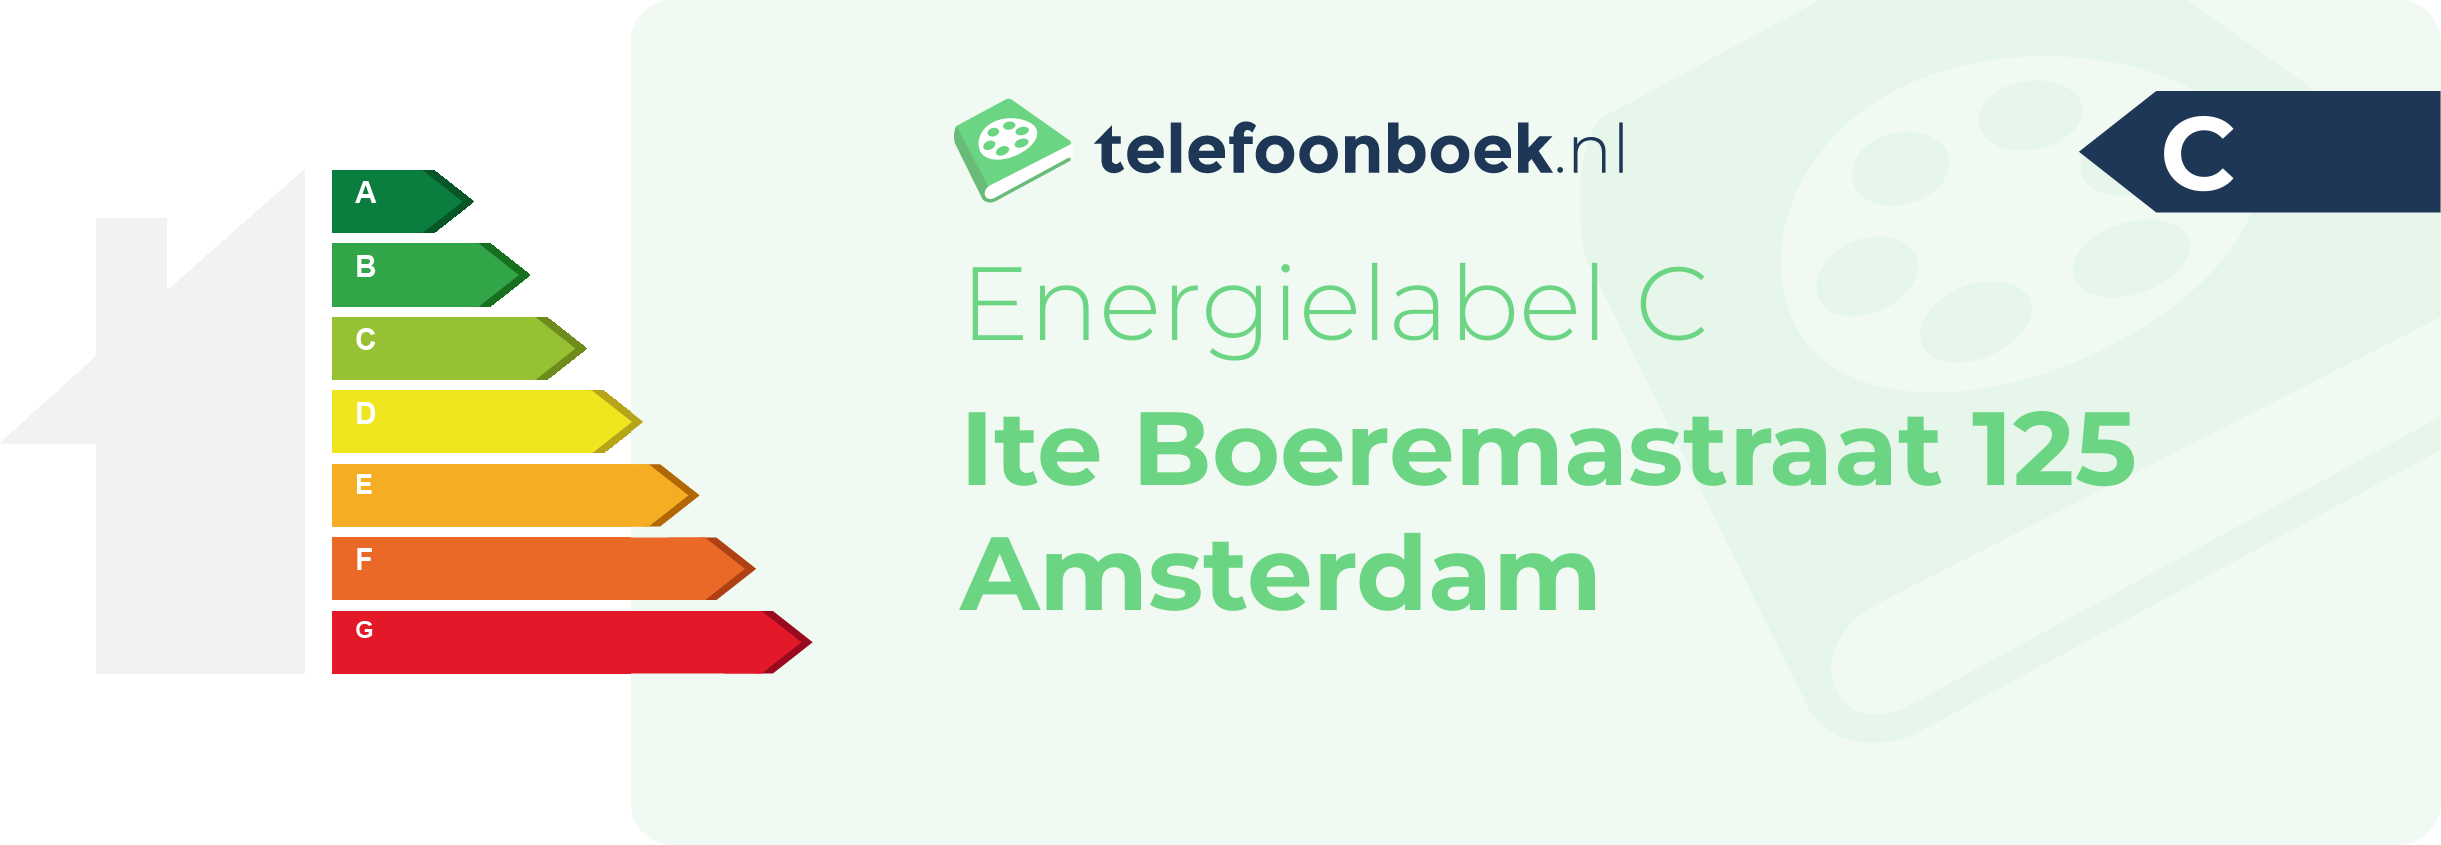 Energielabel Ite Boeremastraat 125 Amsterdam